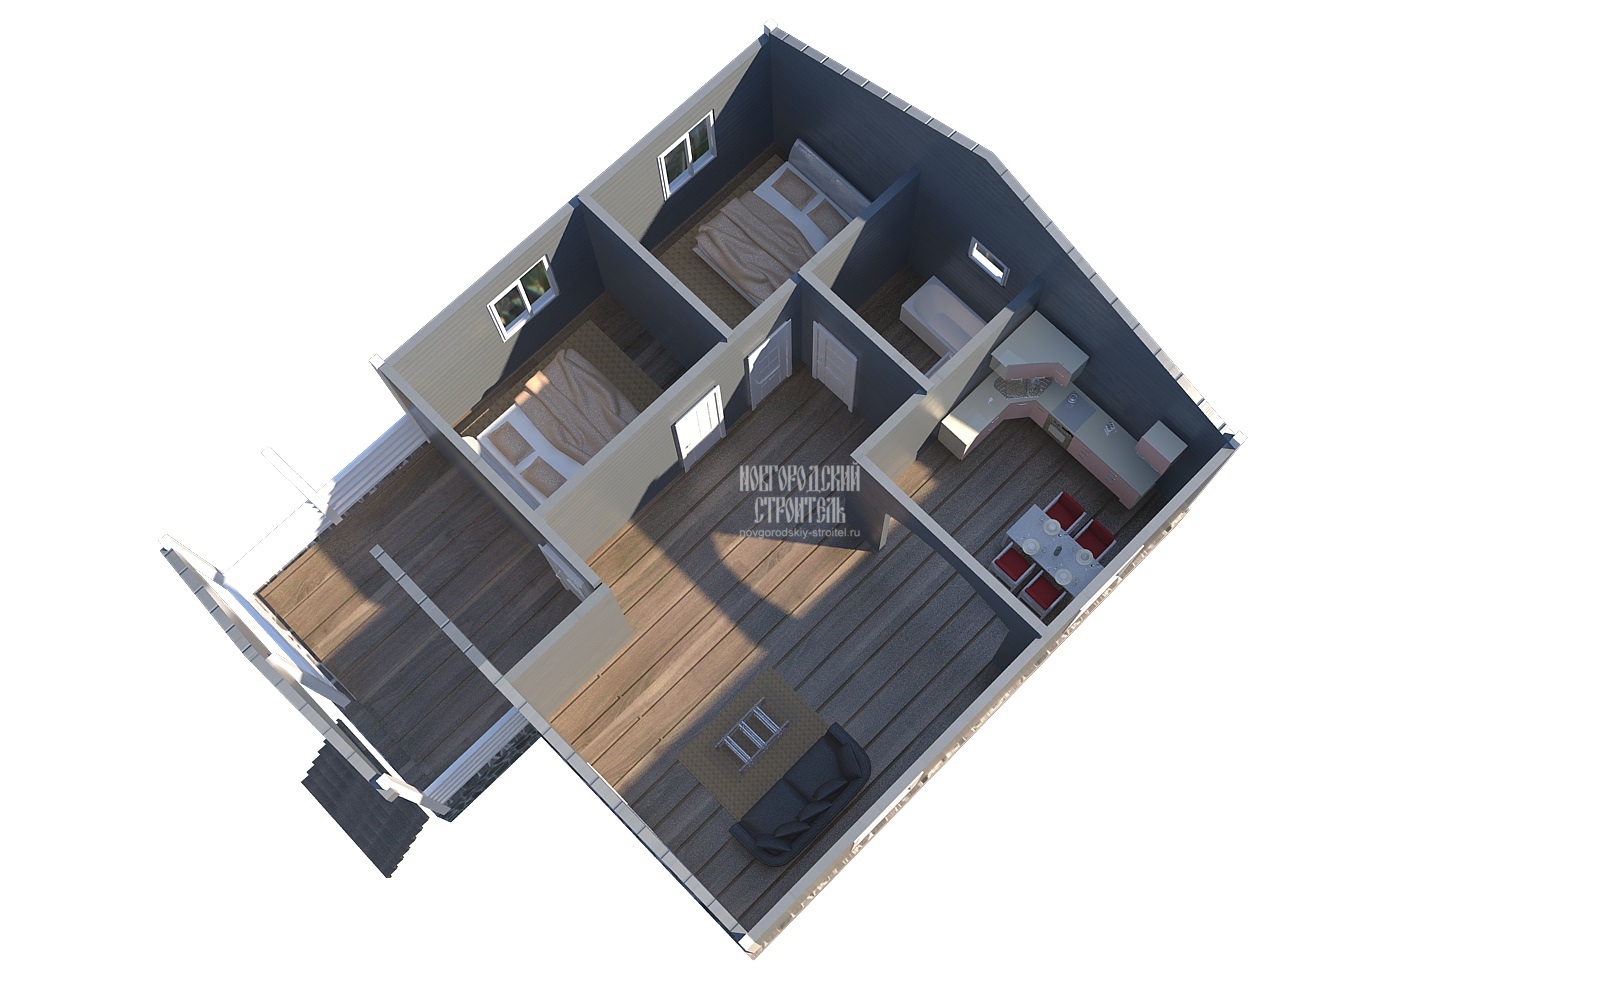 Одноэтажный каркасный дом 8х8 - визуальный план